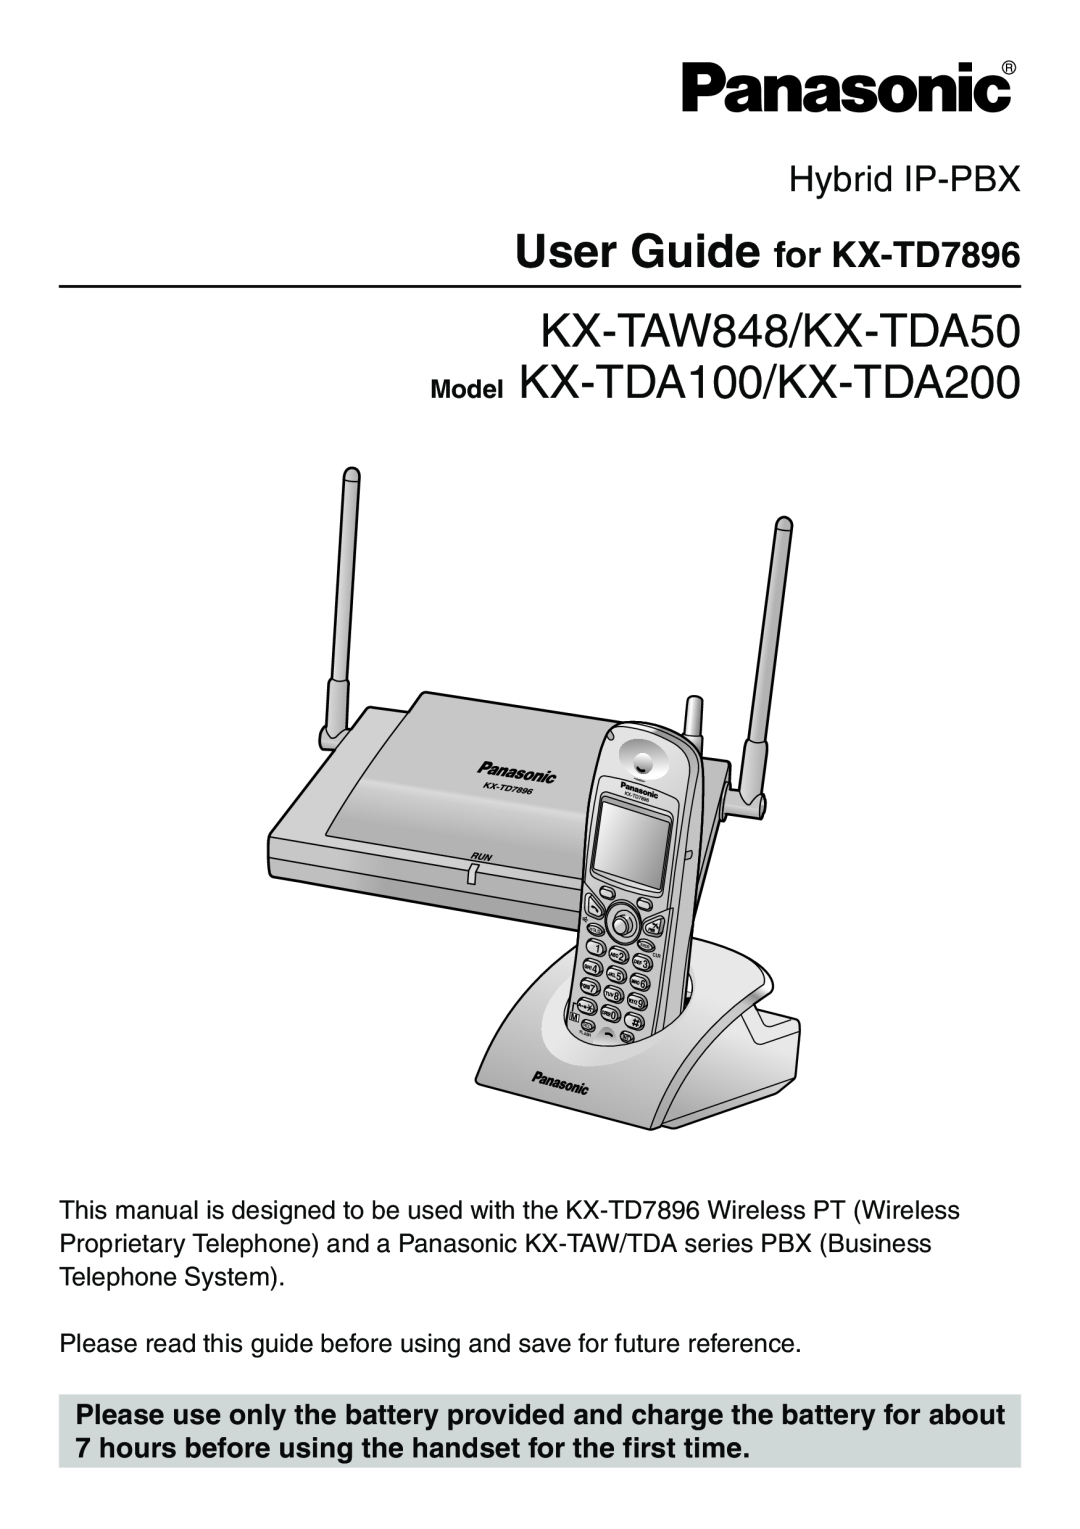 Panasonic manual KX-TAW848/KX-TDA50 Model KX-TDA100/KX-TDA200, Hybrid IP-PBX, User Guide for KX-TD7896 